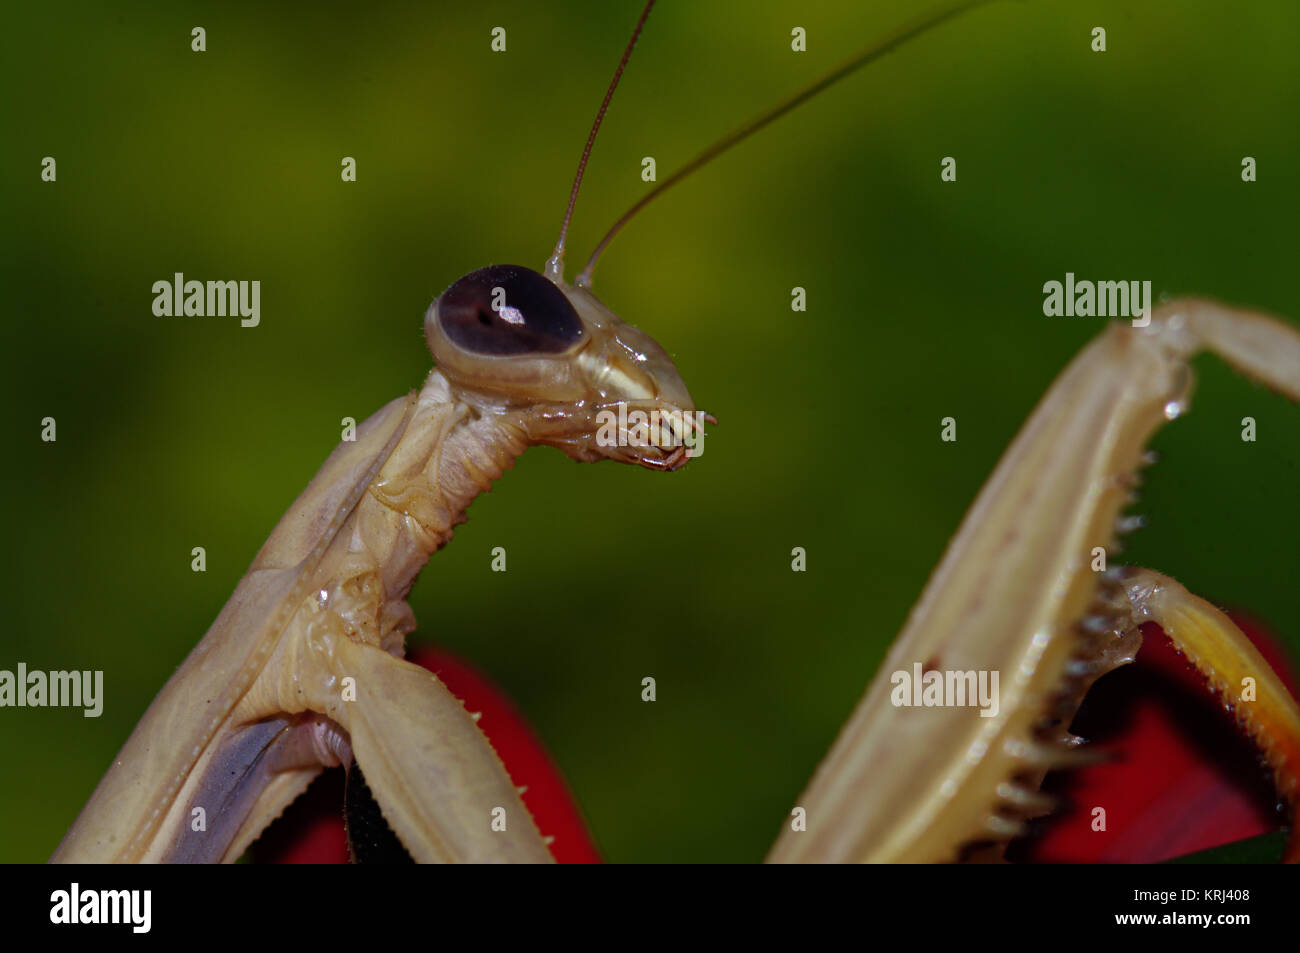 Tan Europäische Gottesanbeterin Insekt, Mantis religiosa, vor grünem Hintergrund unscharf, Makro Nahaufnahme Stockfoto